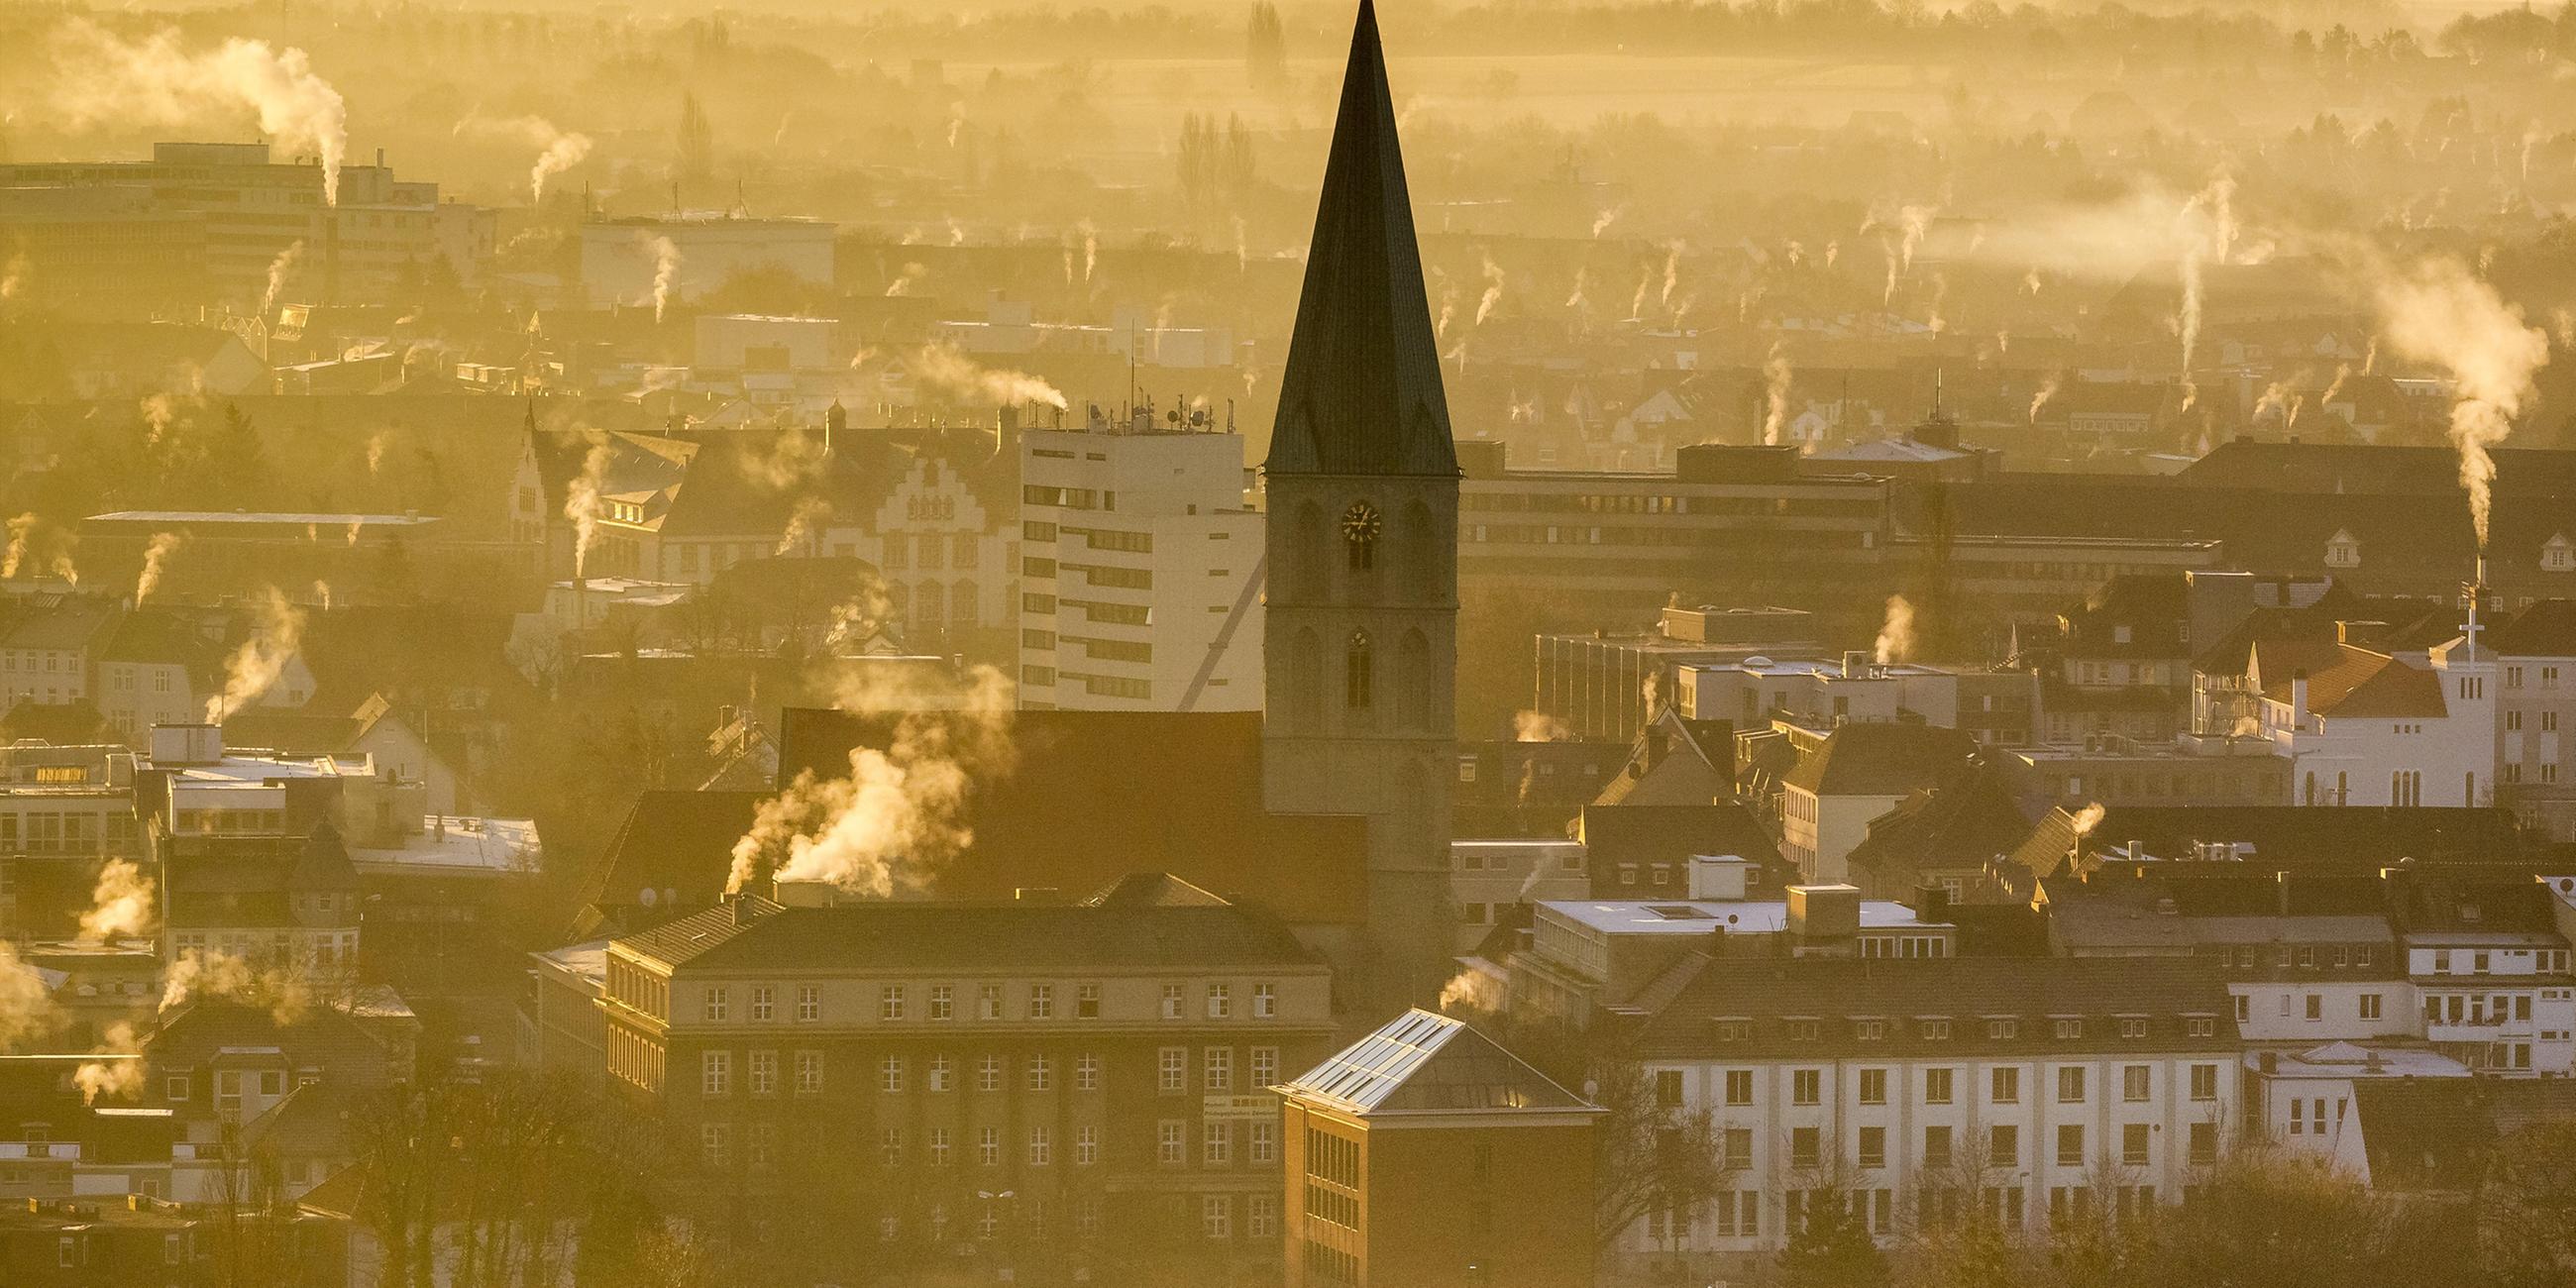 Archiv: Morgennebel über der Innenstadt von Hamm mit Pauluskirche, 11.12.2013, Luftbild,